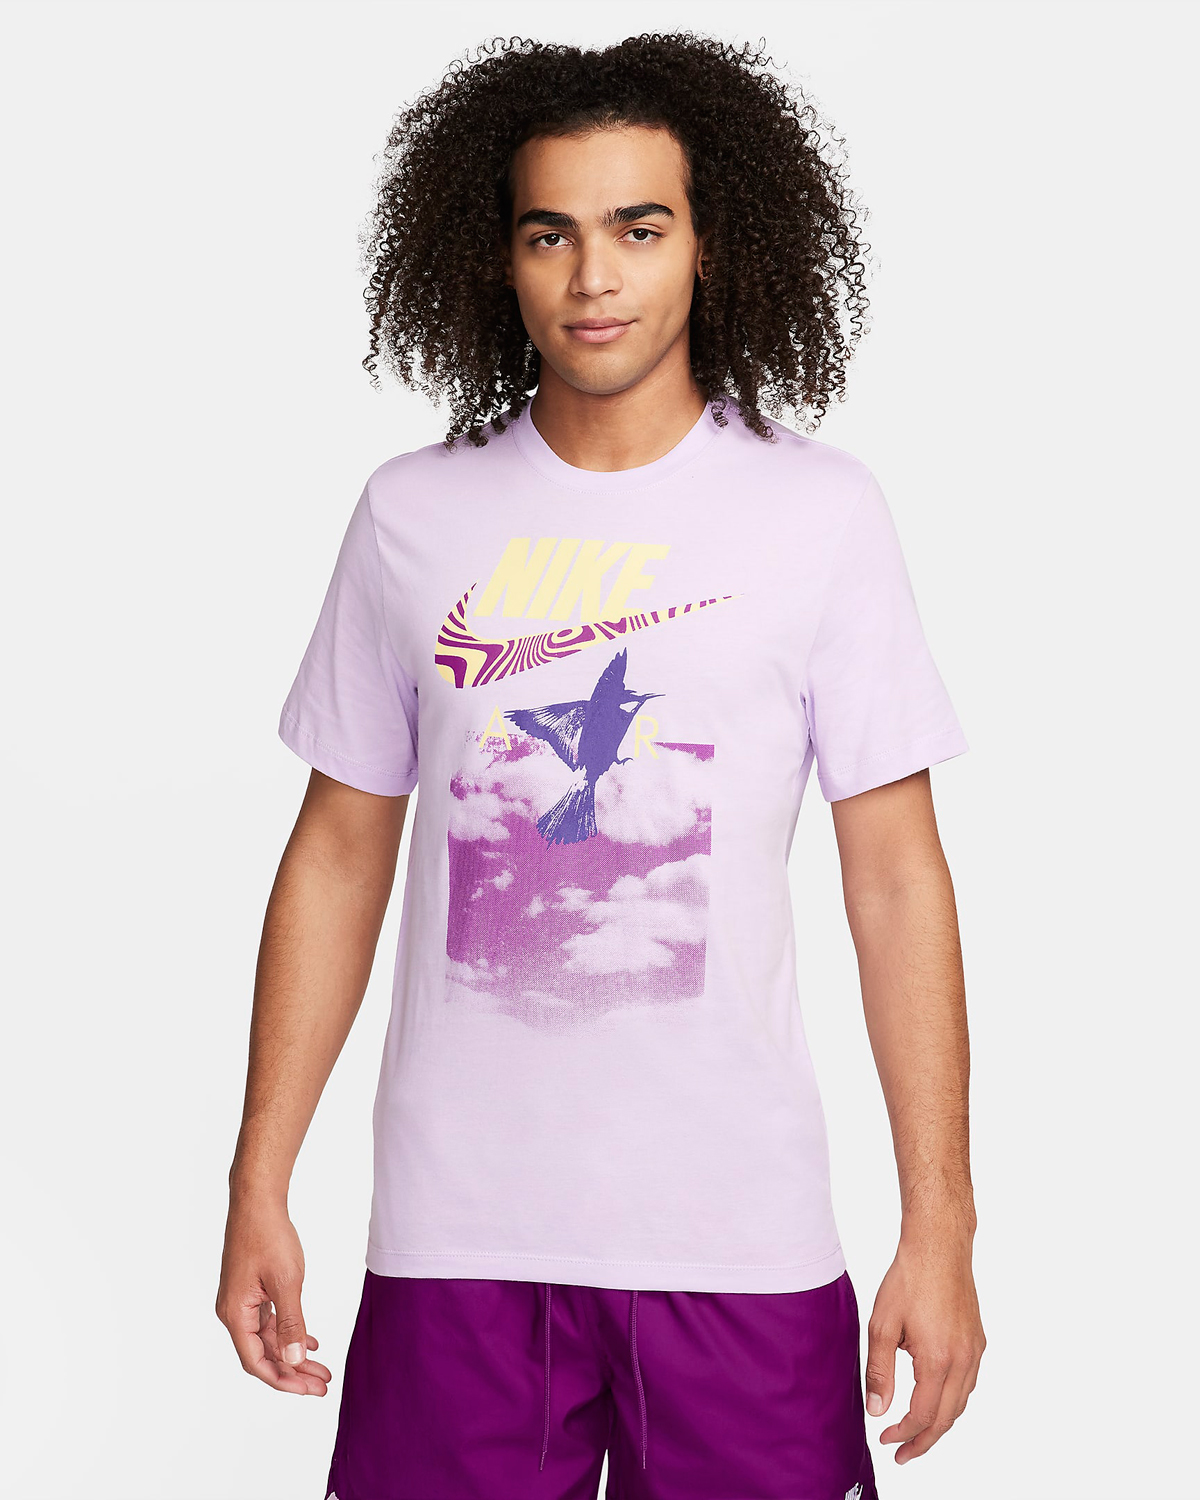 Nike-Sportswear-T-Shirt-Violet-Mist-Purple